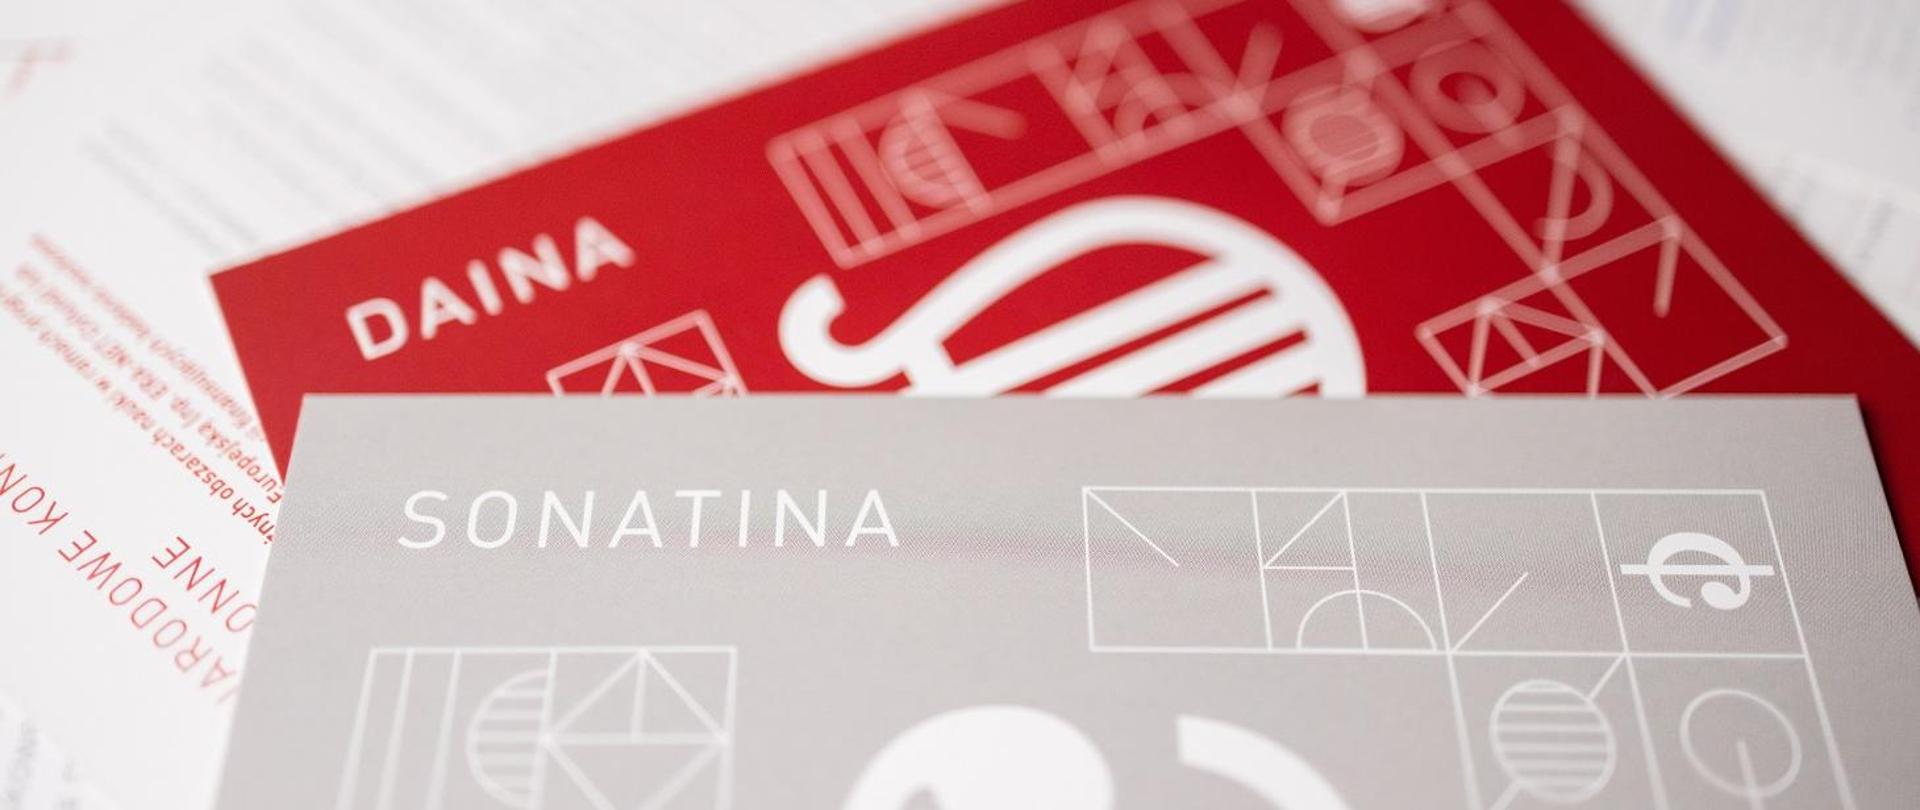 Grafika - szara i czerwona kartka z symbolami naukowymi i napisami Sonatina i Daina.